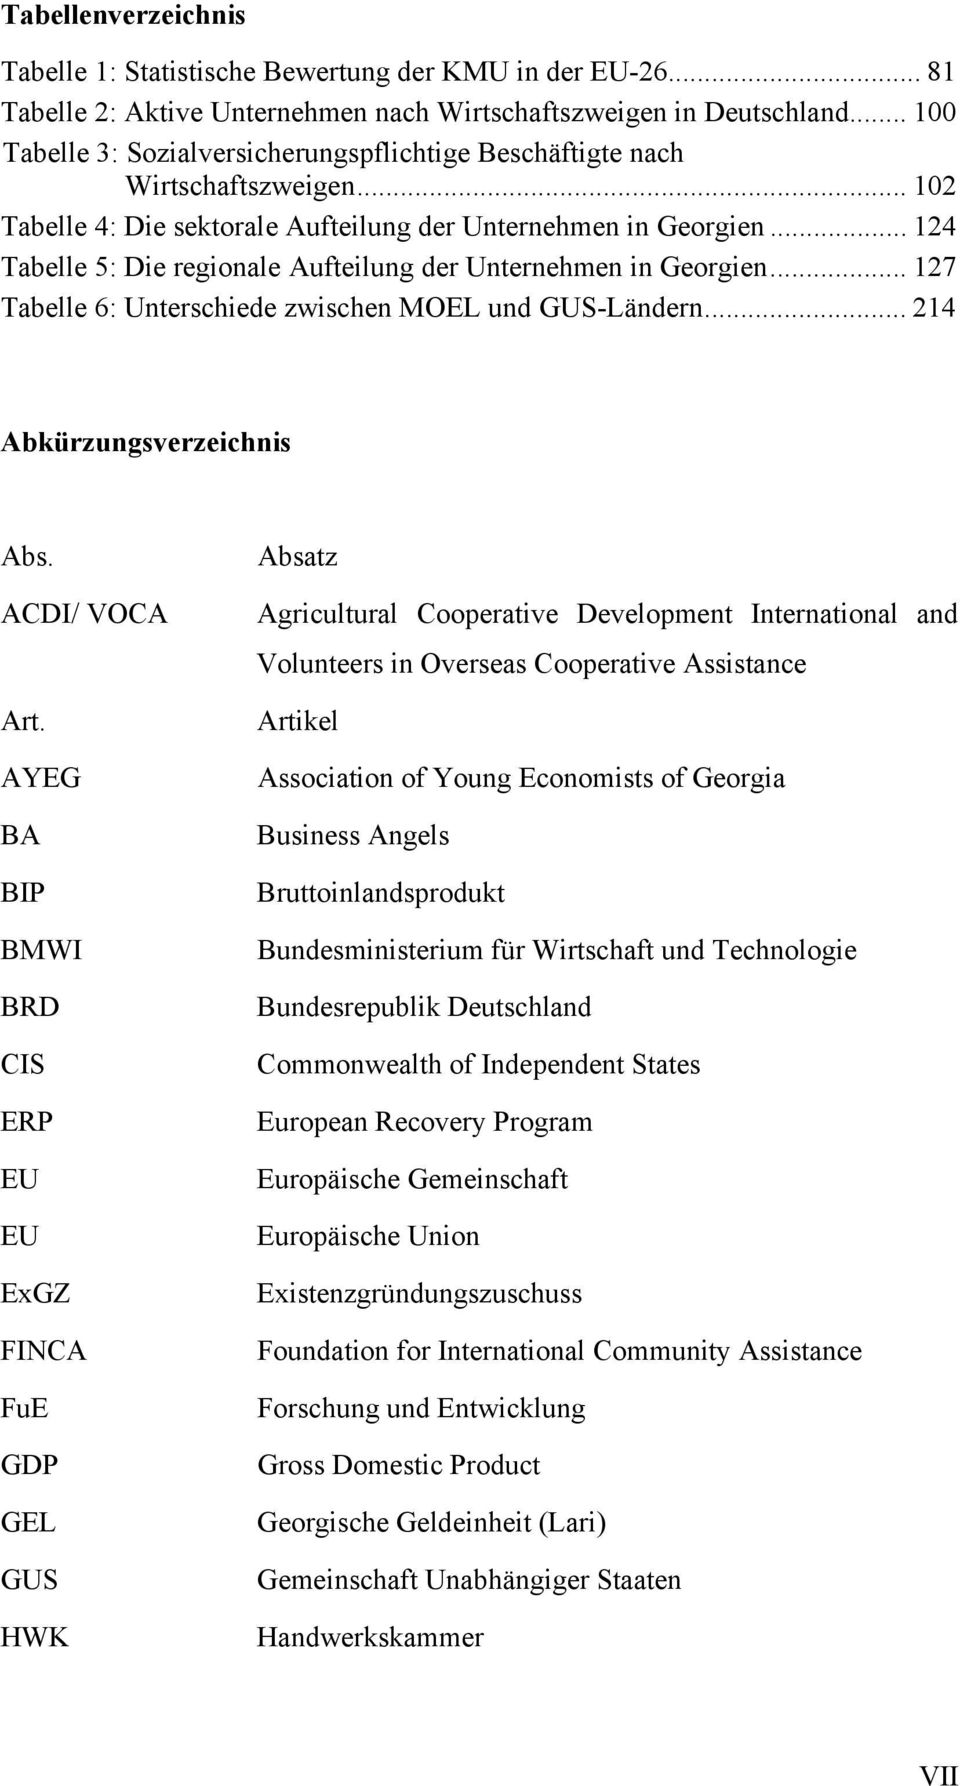 .. 124 Tabelle 5: Die regionale Aufteilung der Unternehmen in Georgien... 127 Tabelle 6: Unterschiede zwischen MOEL und GUS-Ländern... 214 Abkürzungsverzeichnis Abs. ACDI/ VOCA Art.